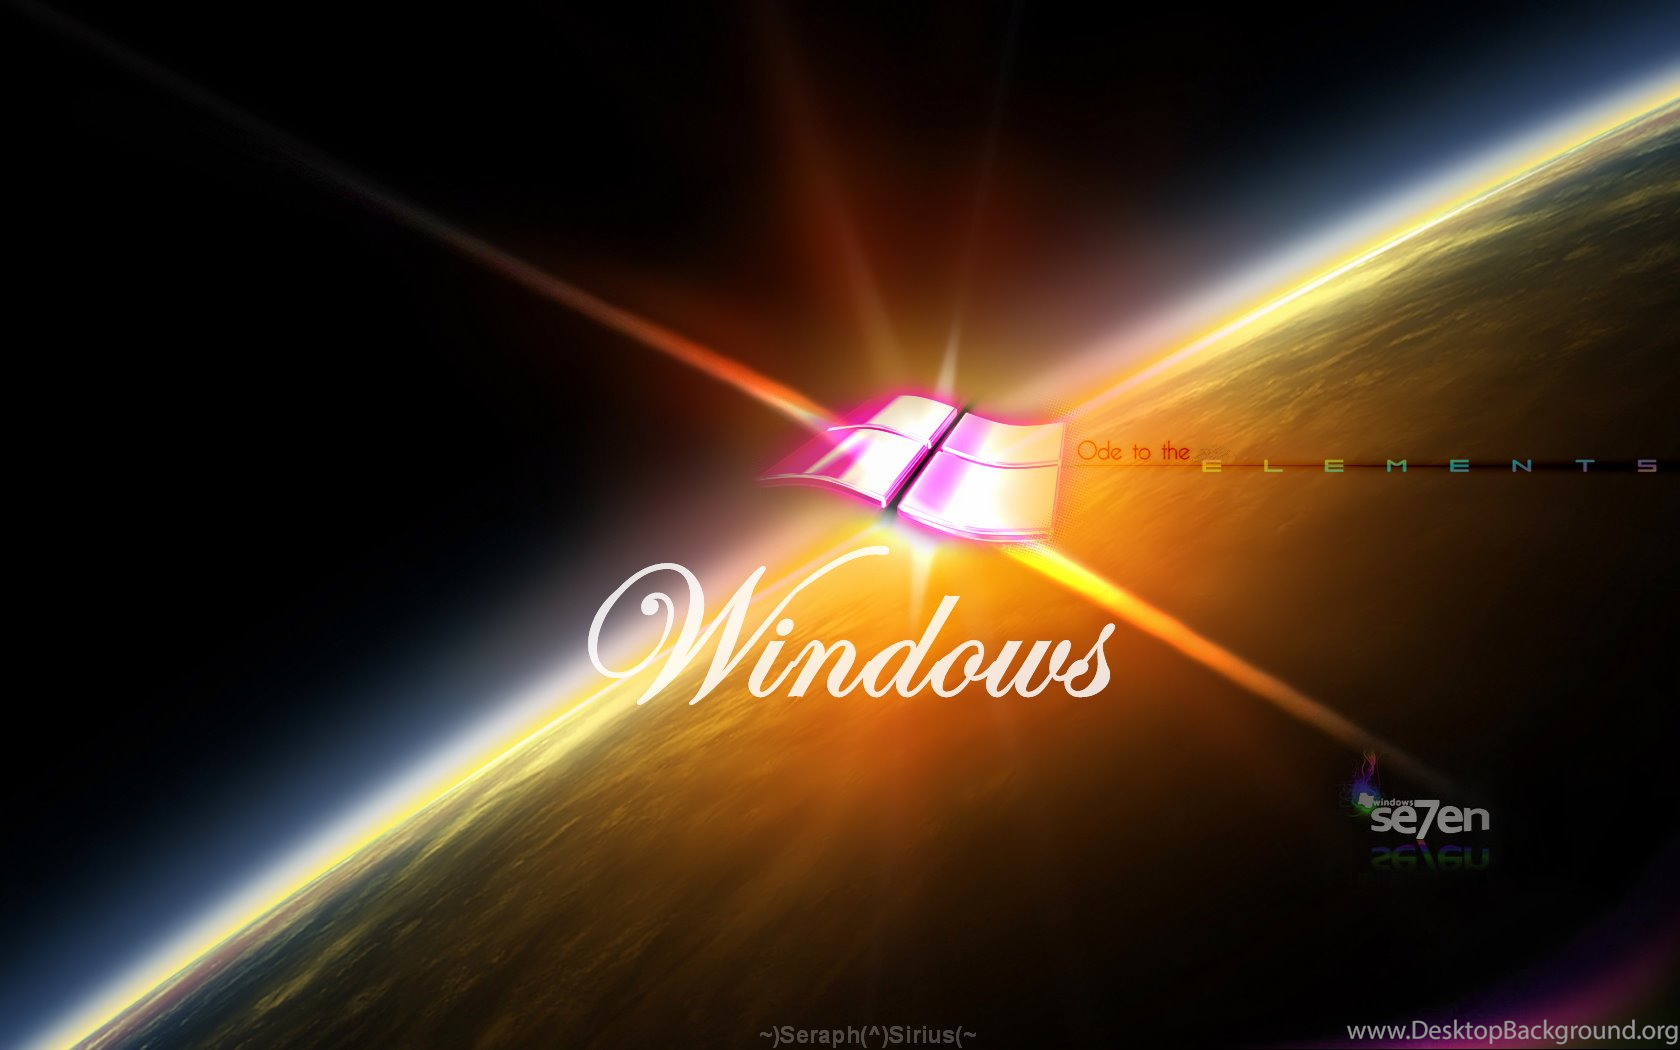 Windows 7 Desktop Theme 2 3 By Seraphsirius On Deviantart Desktop Background